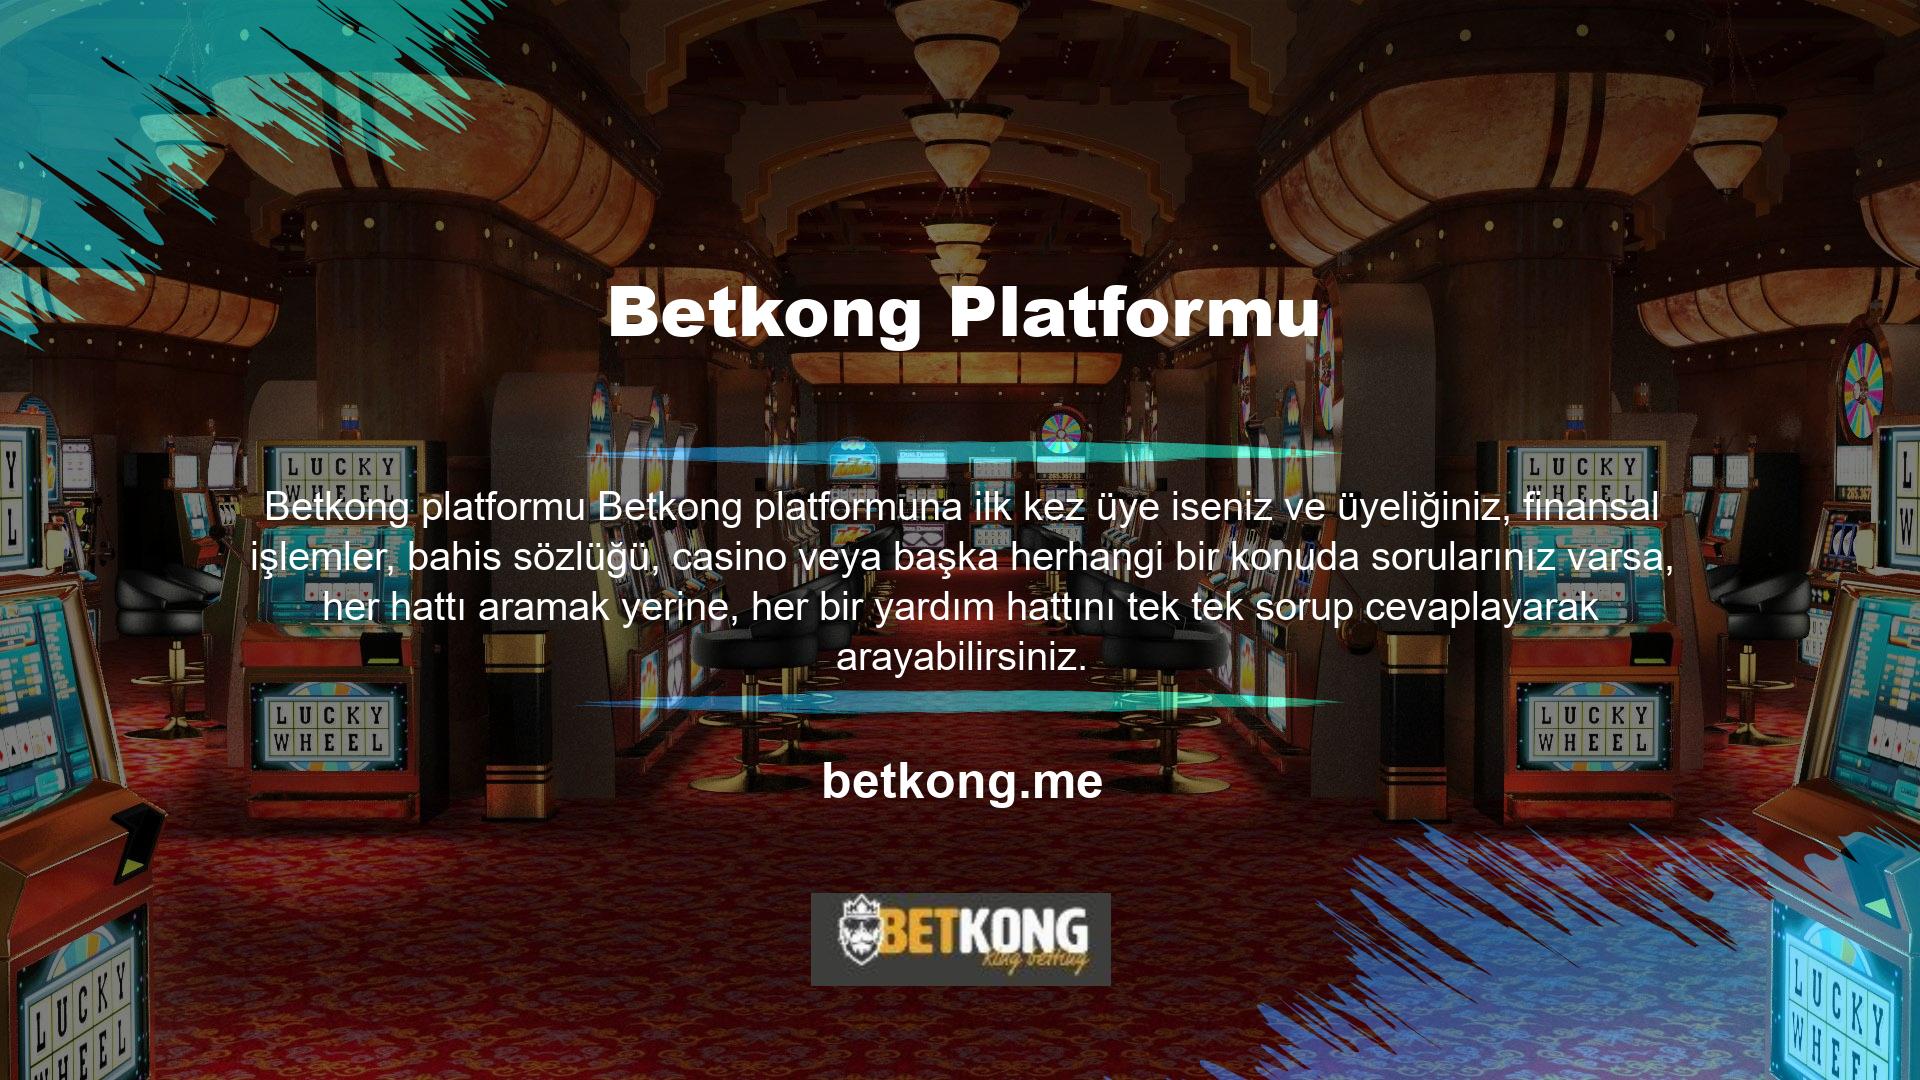 Mevcut Betkong ana sayfasına erişiminiz varsa, ekranın alt kısmında bir SSS seçeneği olacaktır